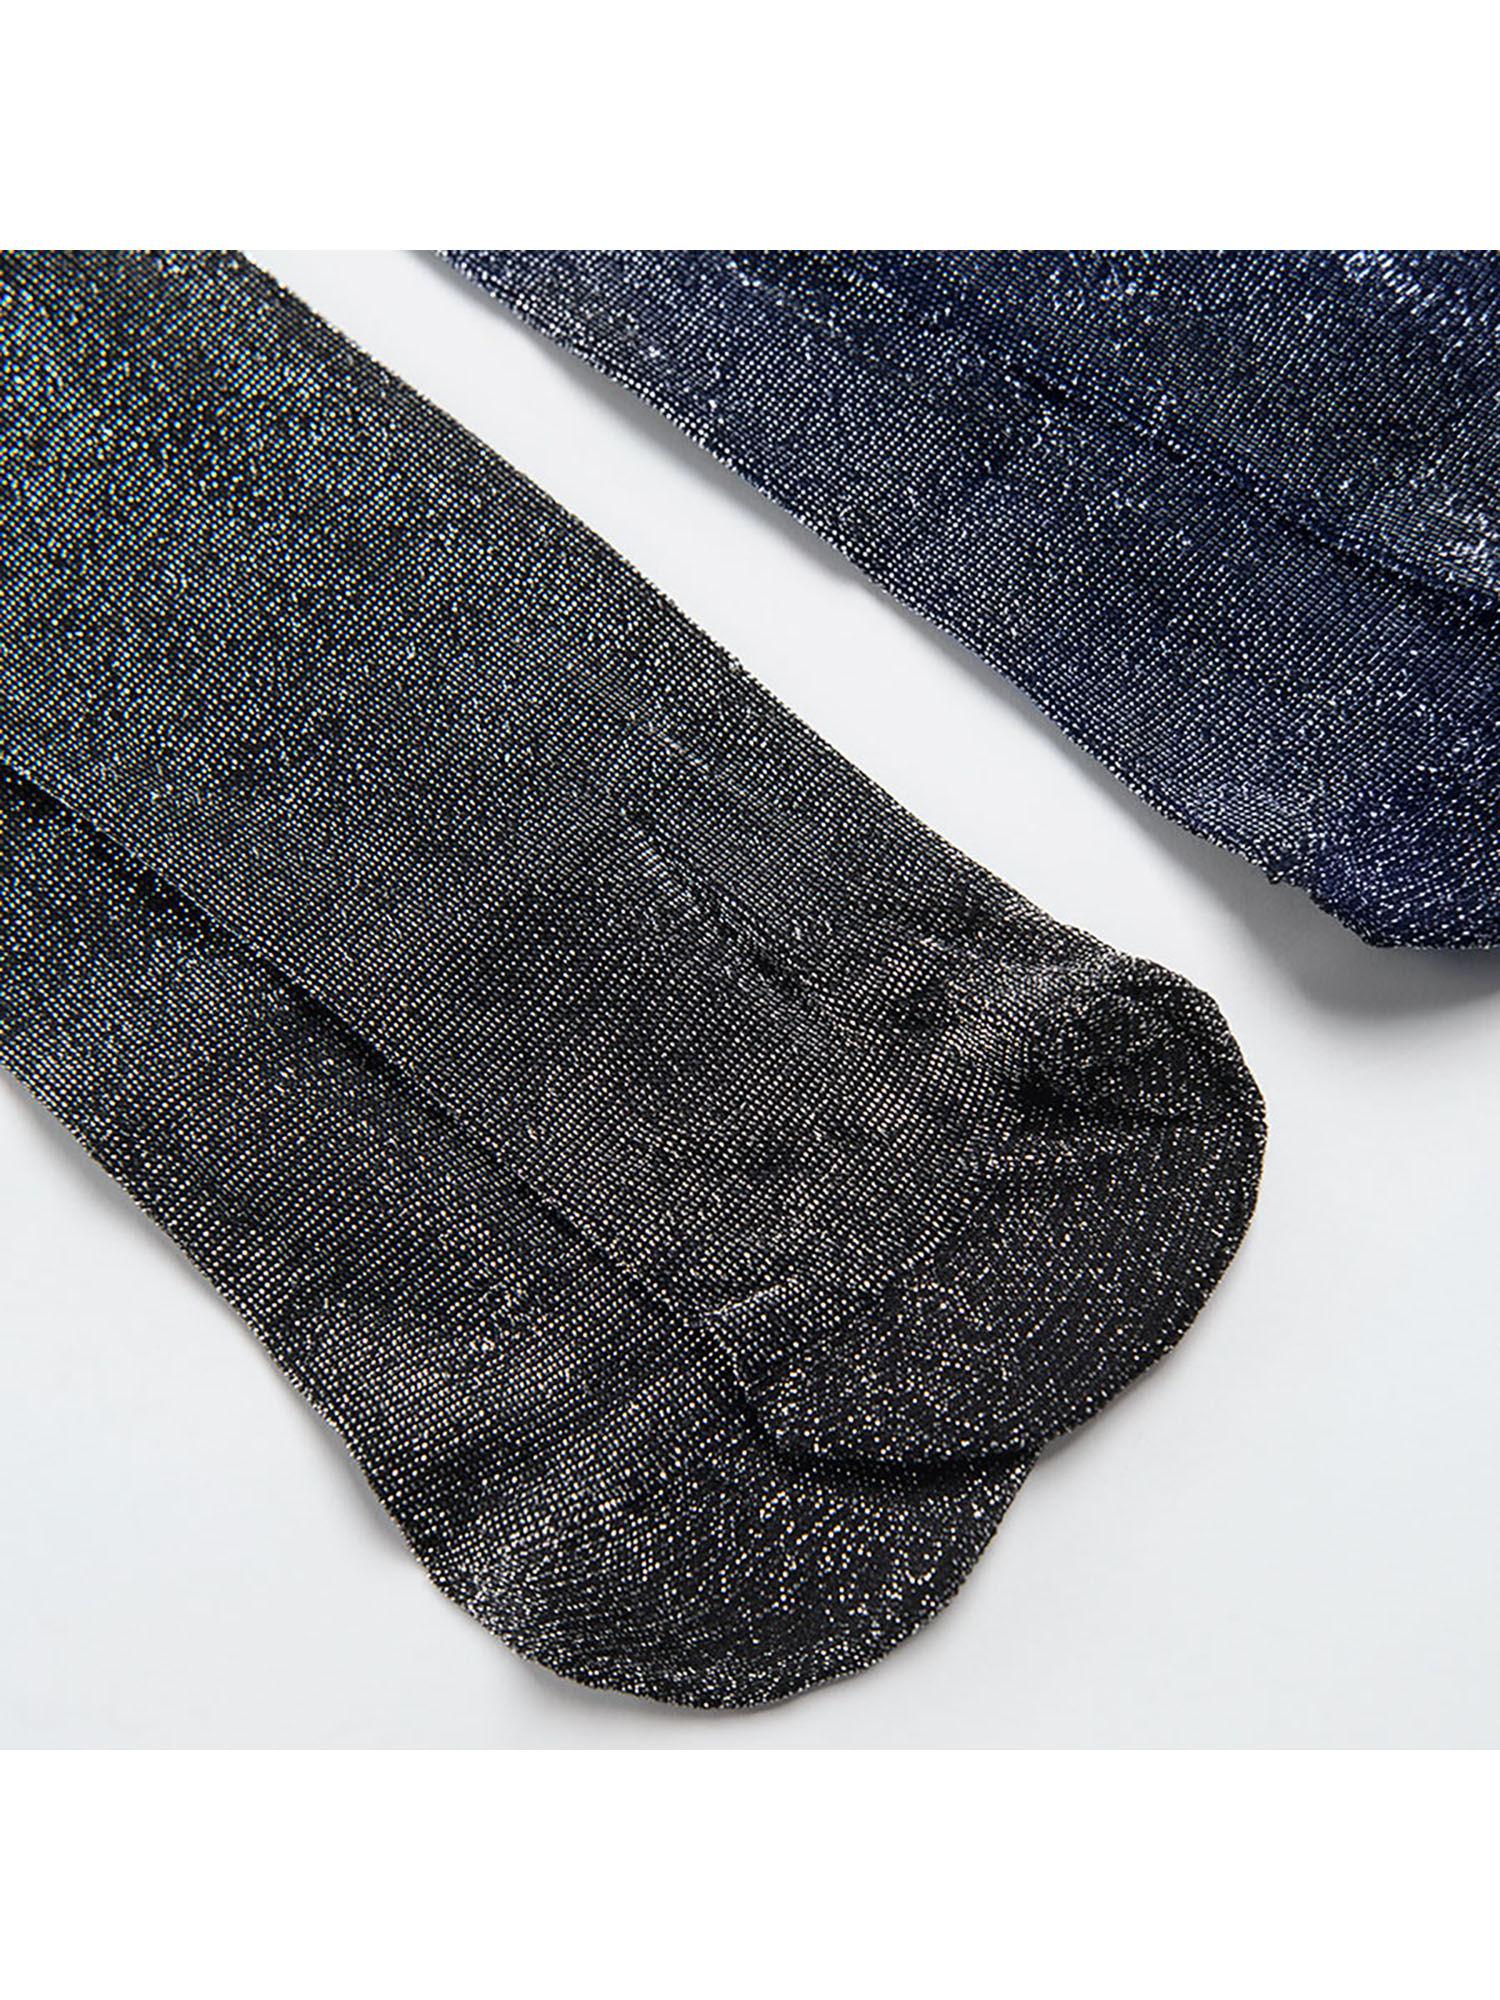 girls multi color woven socks (set of 2)